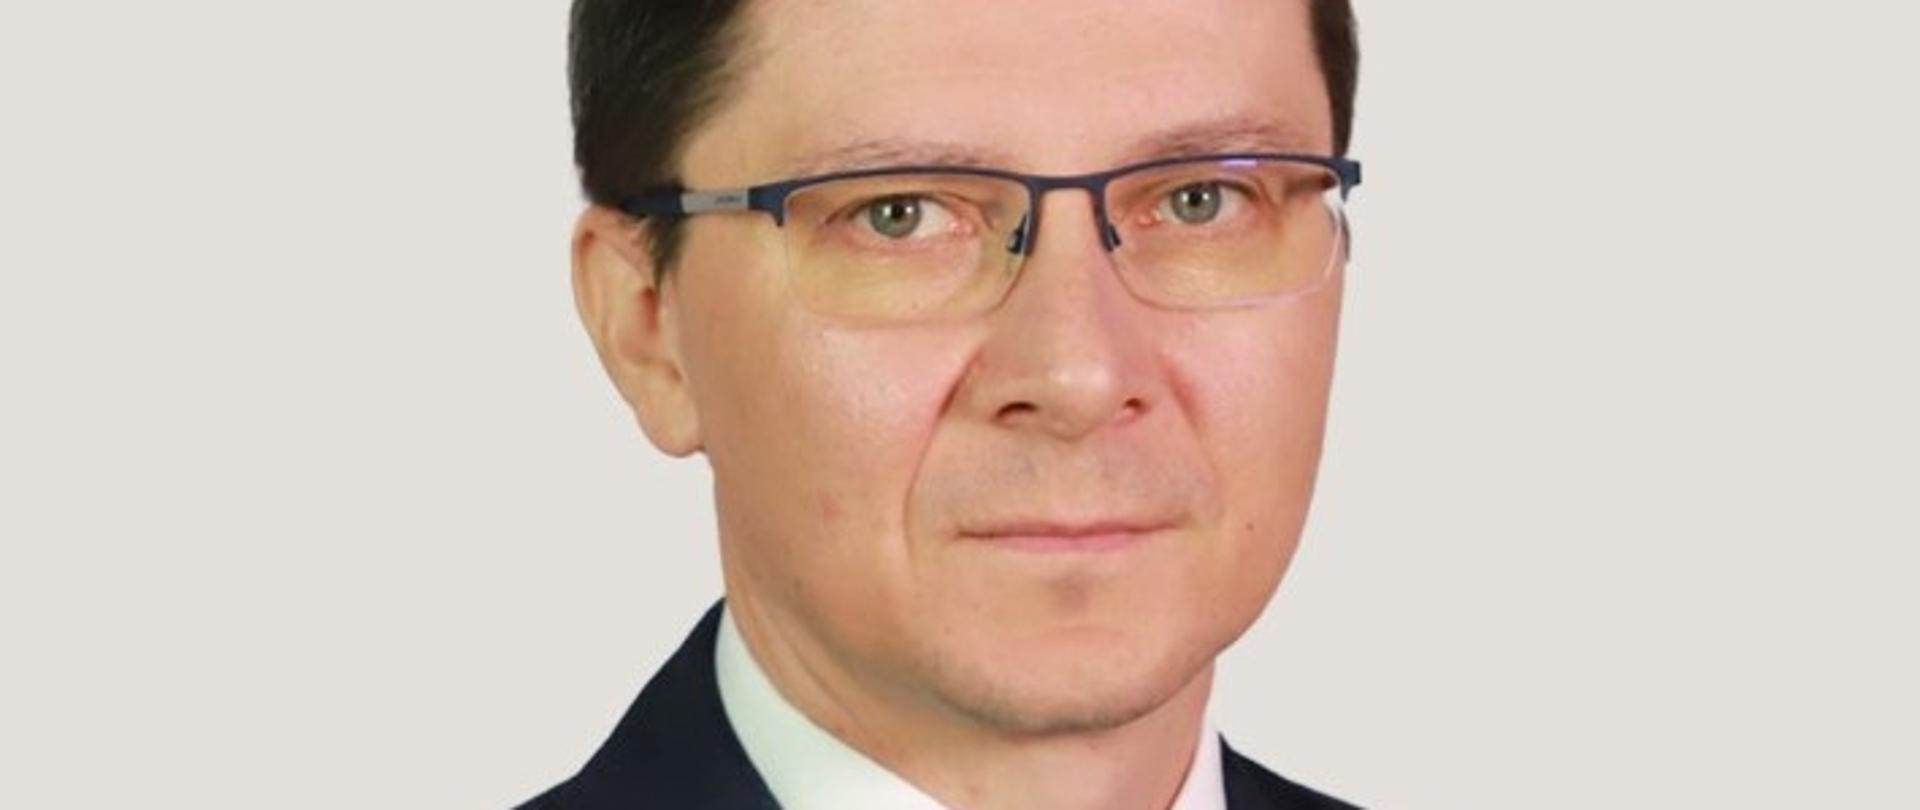 Damian Jakubik p.o. Główny Inspektor Ochrony Środowiska
Dyrektor Generalny 